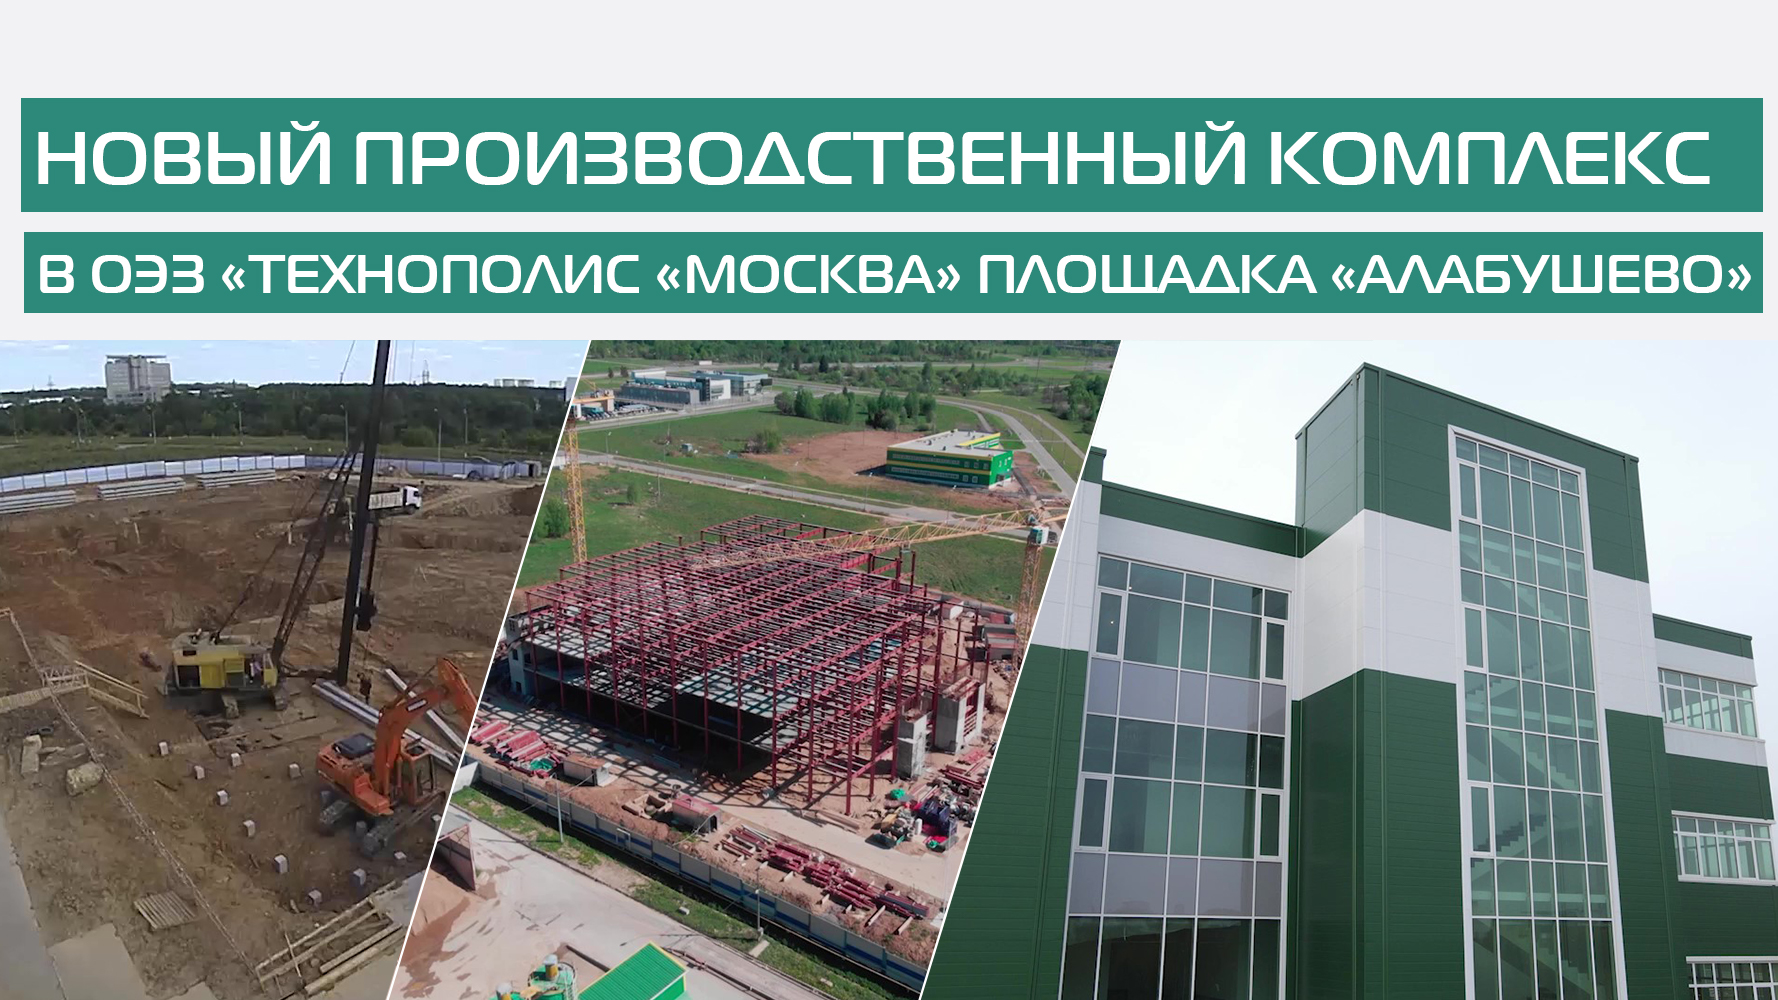 Строительство нового производственного комплекса в ОЭЗ «Технополис «Москва» площадка «Алабушево»